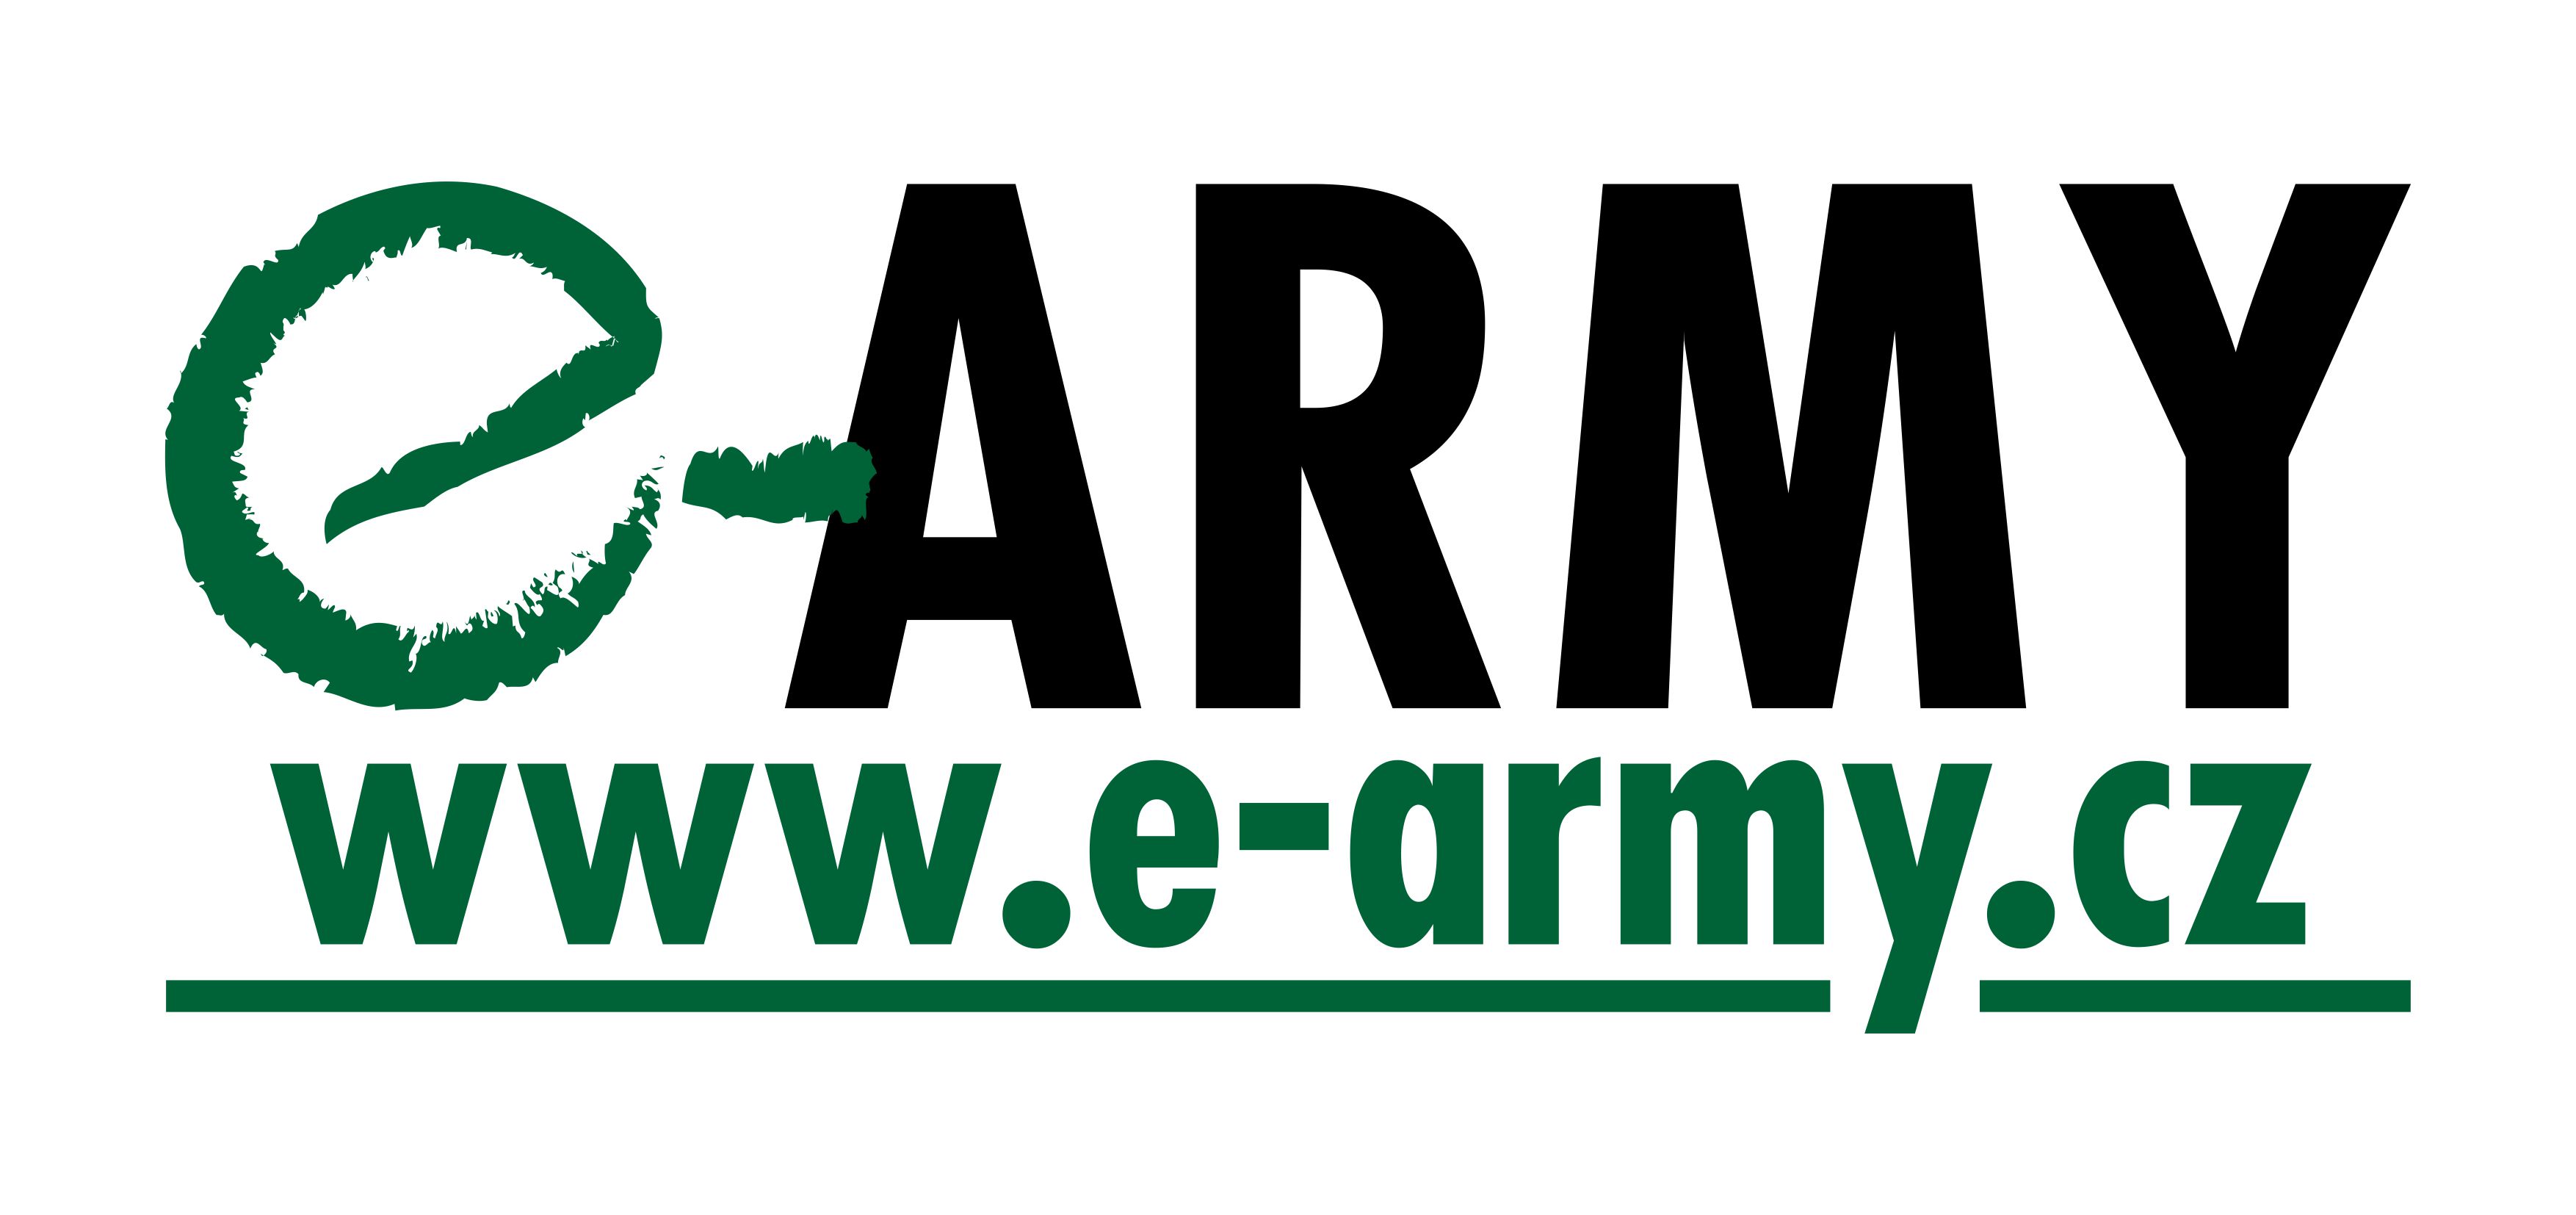 E-army